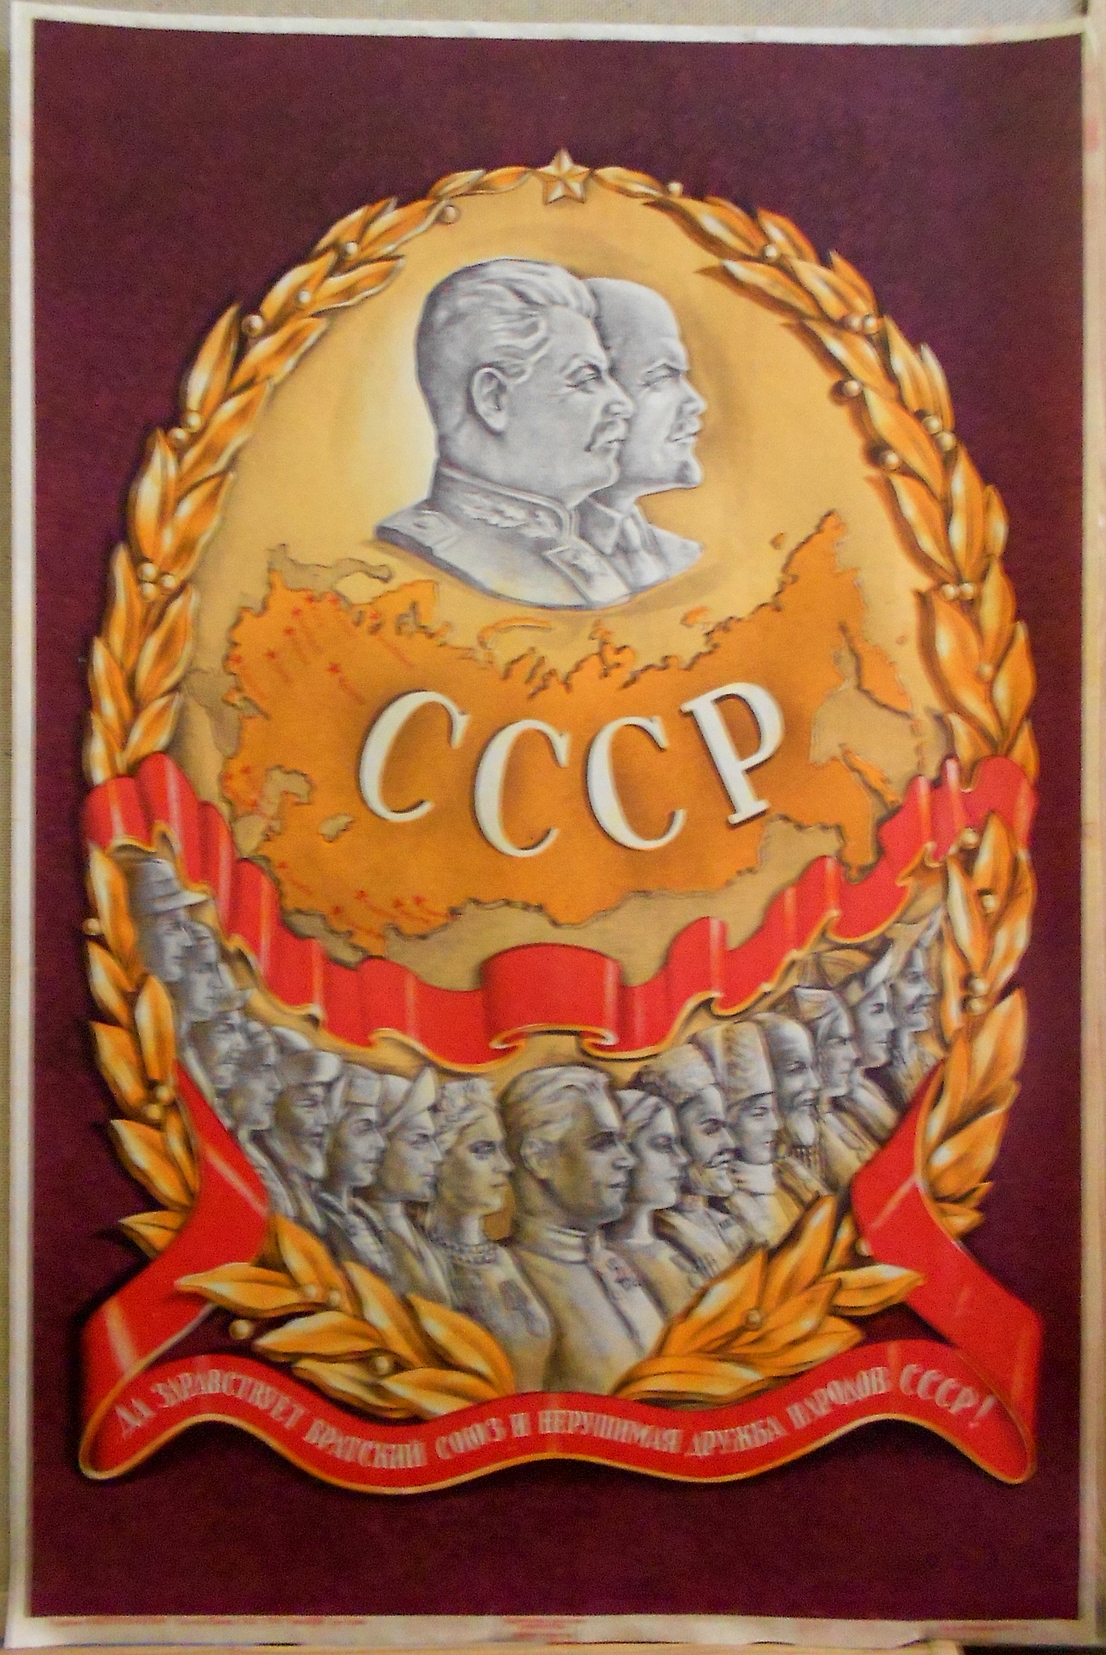 Плакат "Да здравствует братский союз и нерушимая дружба народов СССР !"